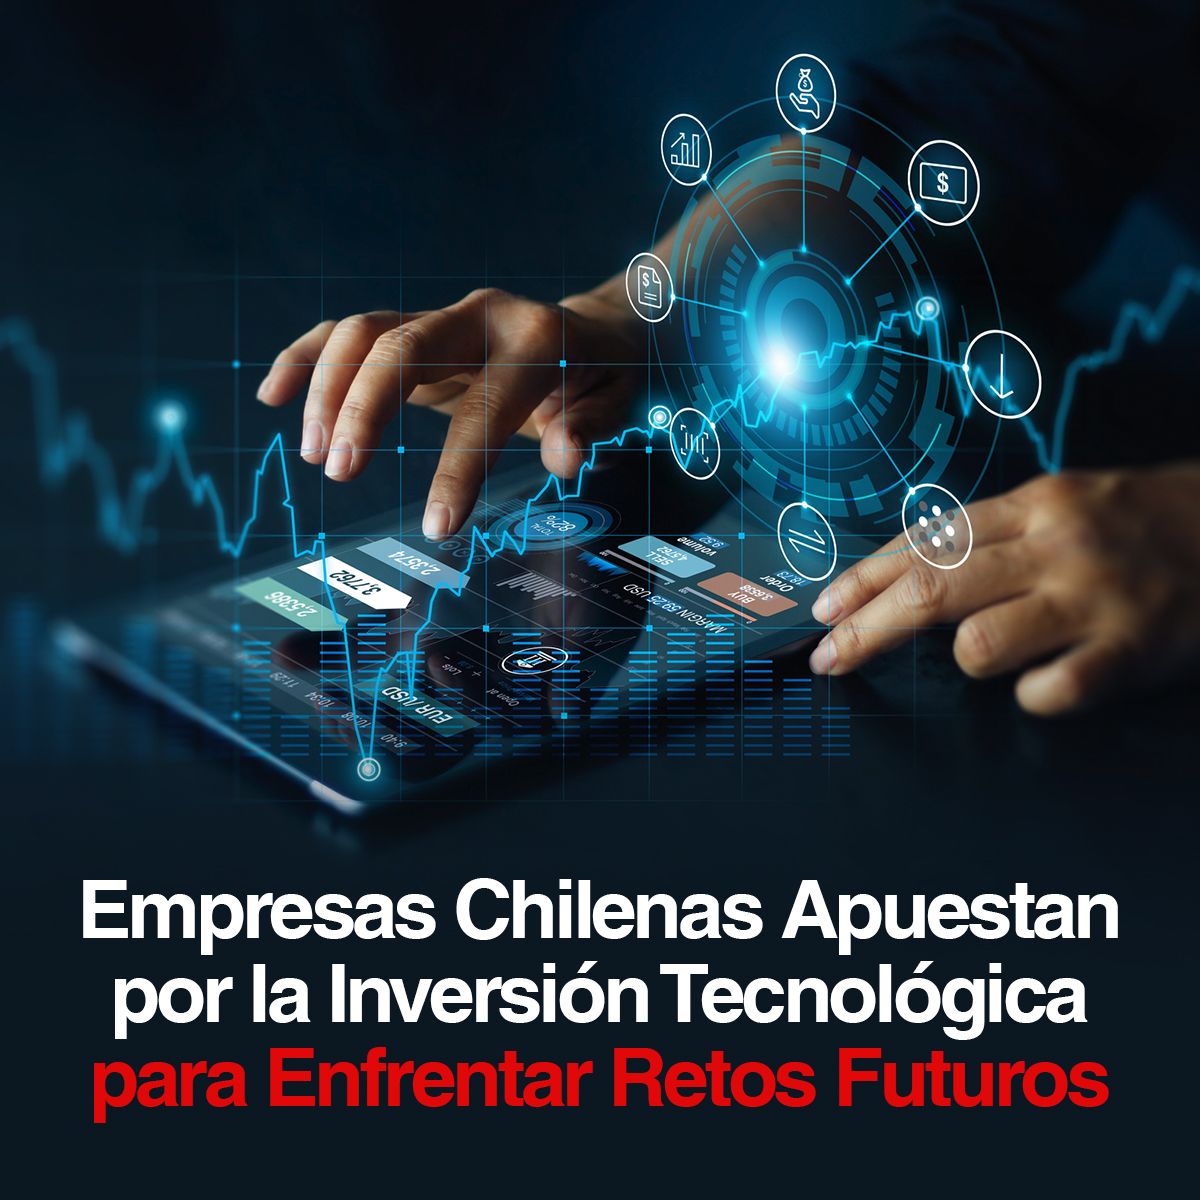 Empresas Chilenas Apuestan por la Inversión Tecnológica para Enfrentar Retos Futuros